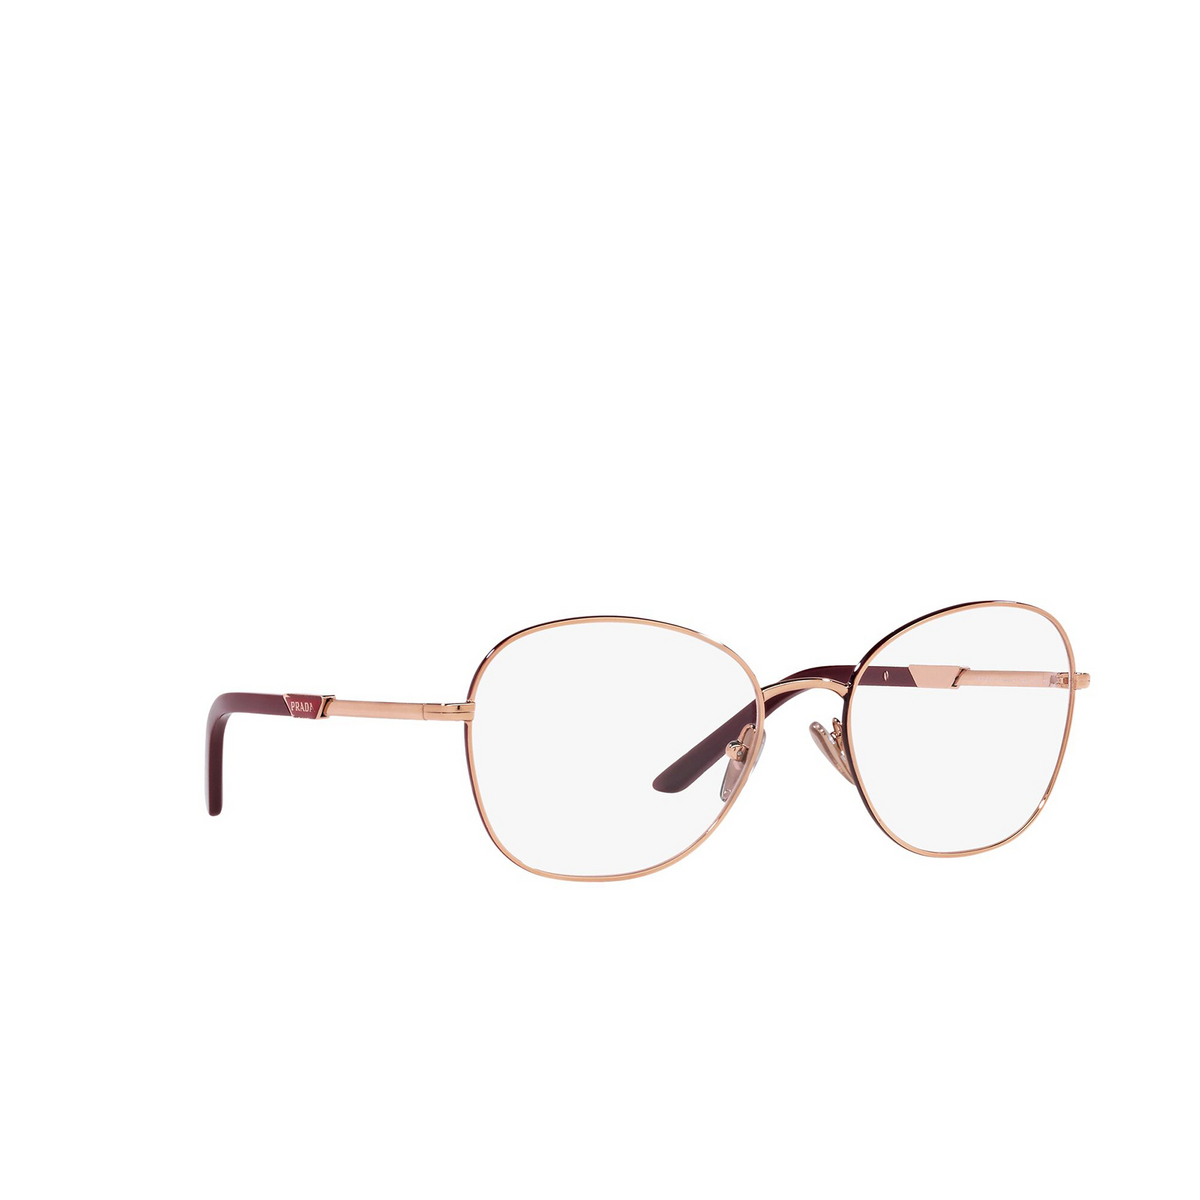 Prada® Round Eyeglasses: PR 64YV color Rose Gold / Rosso 16A1O1 - three-quarters view.